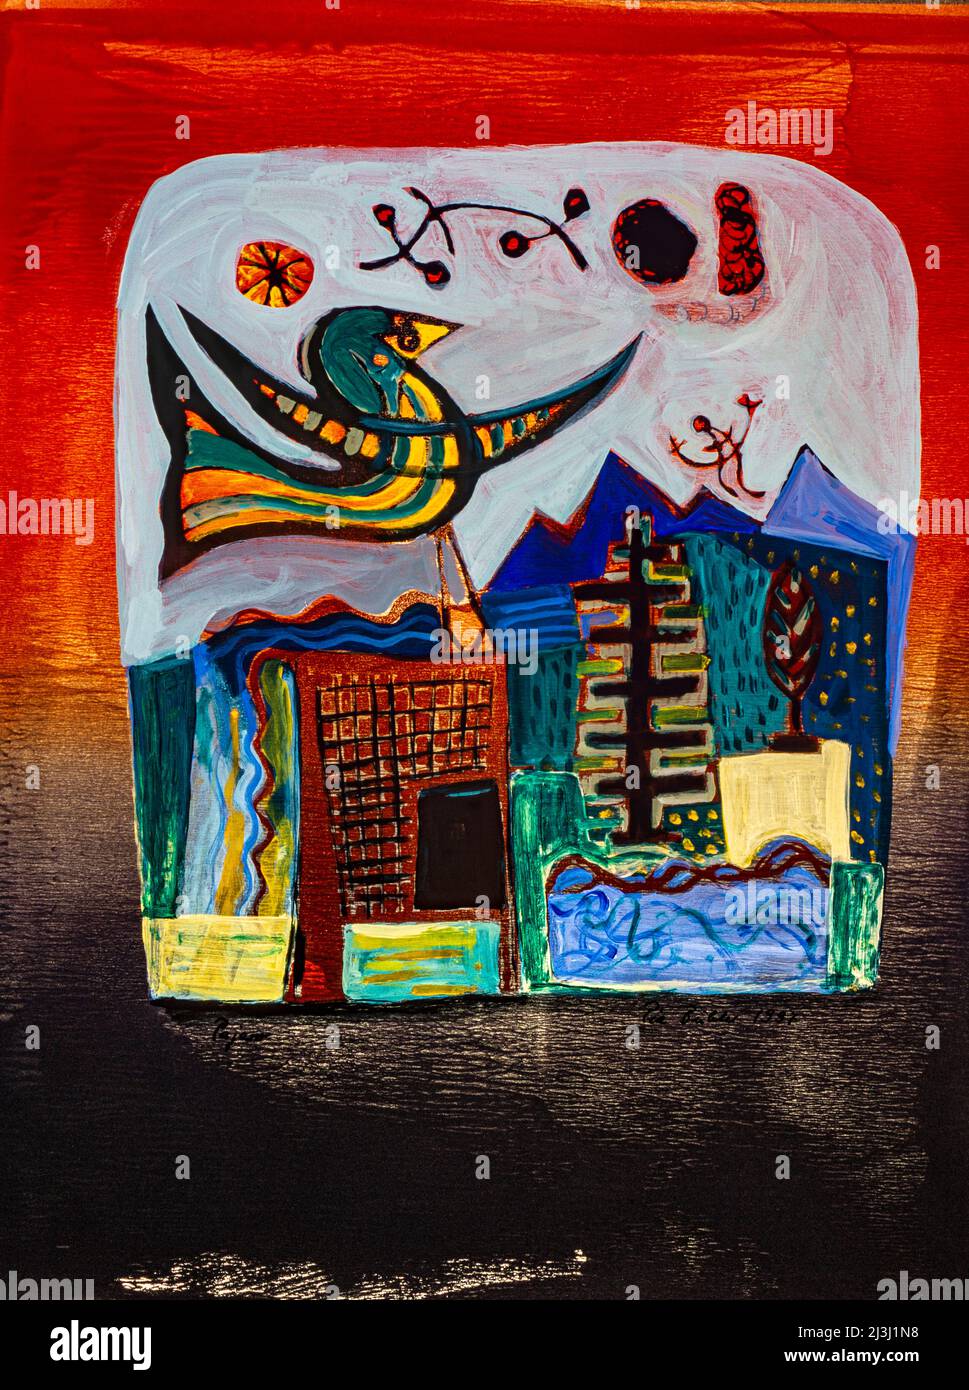 Peinture par Pia Bühler, lithographie et figurine fantaisie acrylique, un oiseau entouré par la lumière rouge du soleil couchant, en dessous de lui bâtiments et un paysage sombre avec des montagnes bleues en arrière-plan Banque D'Images